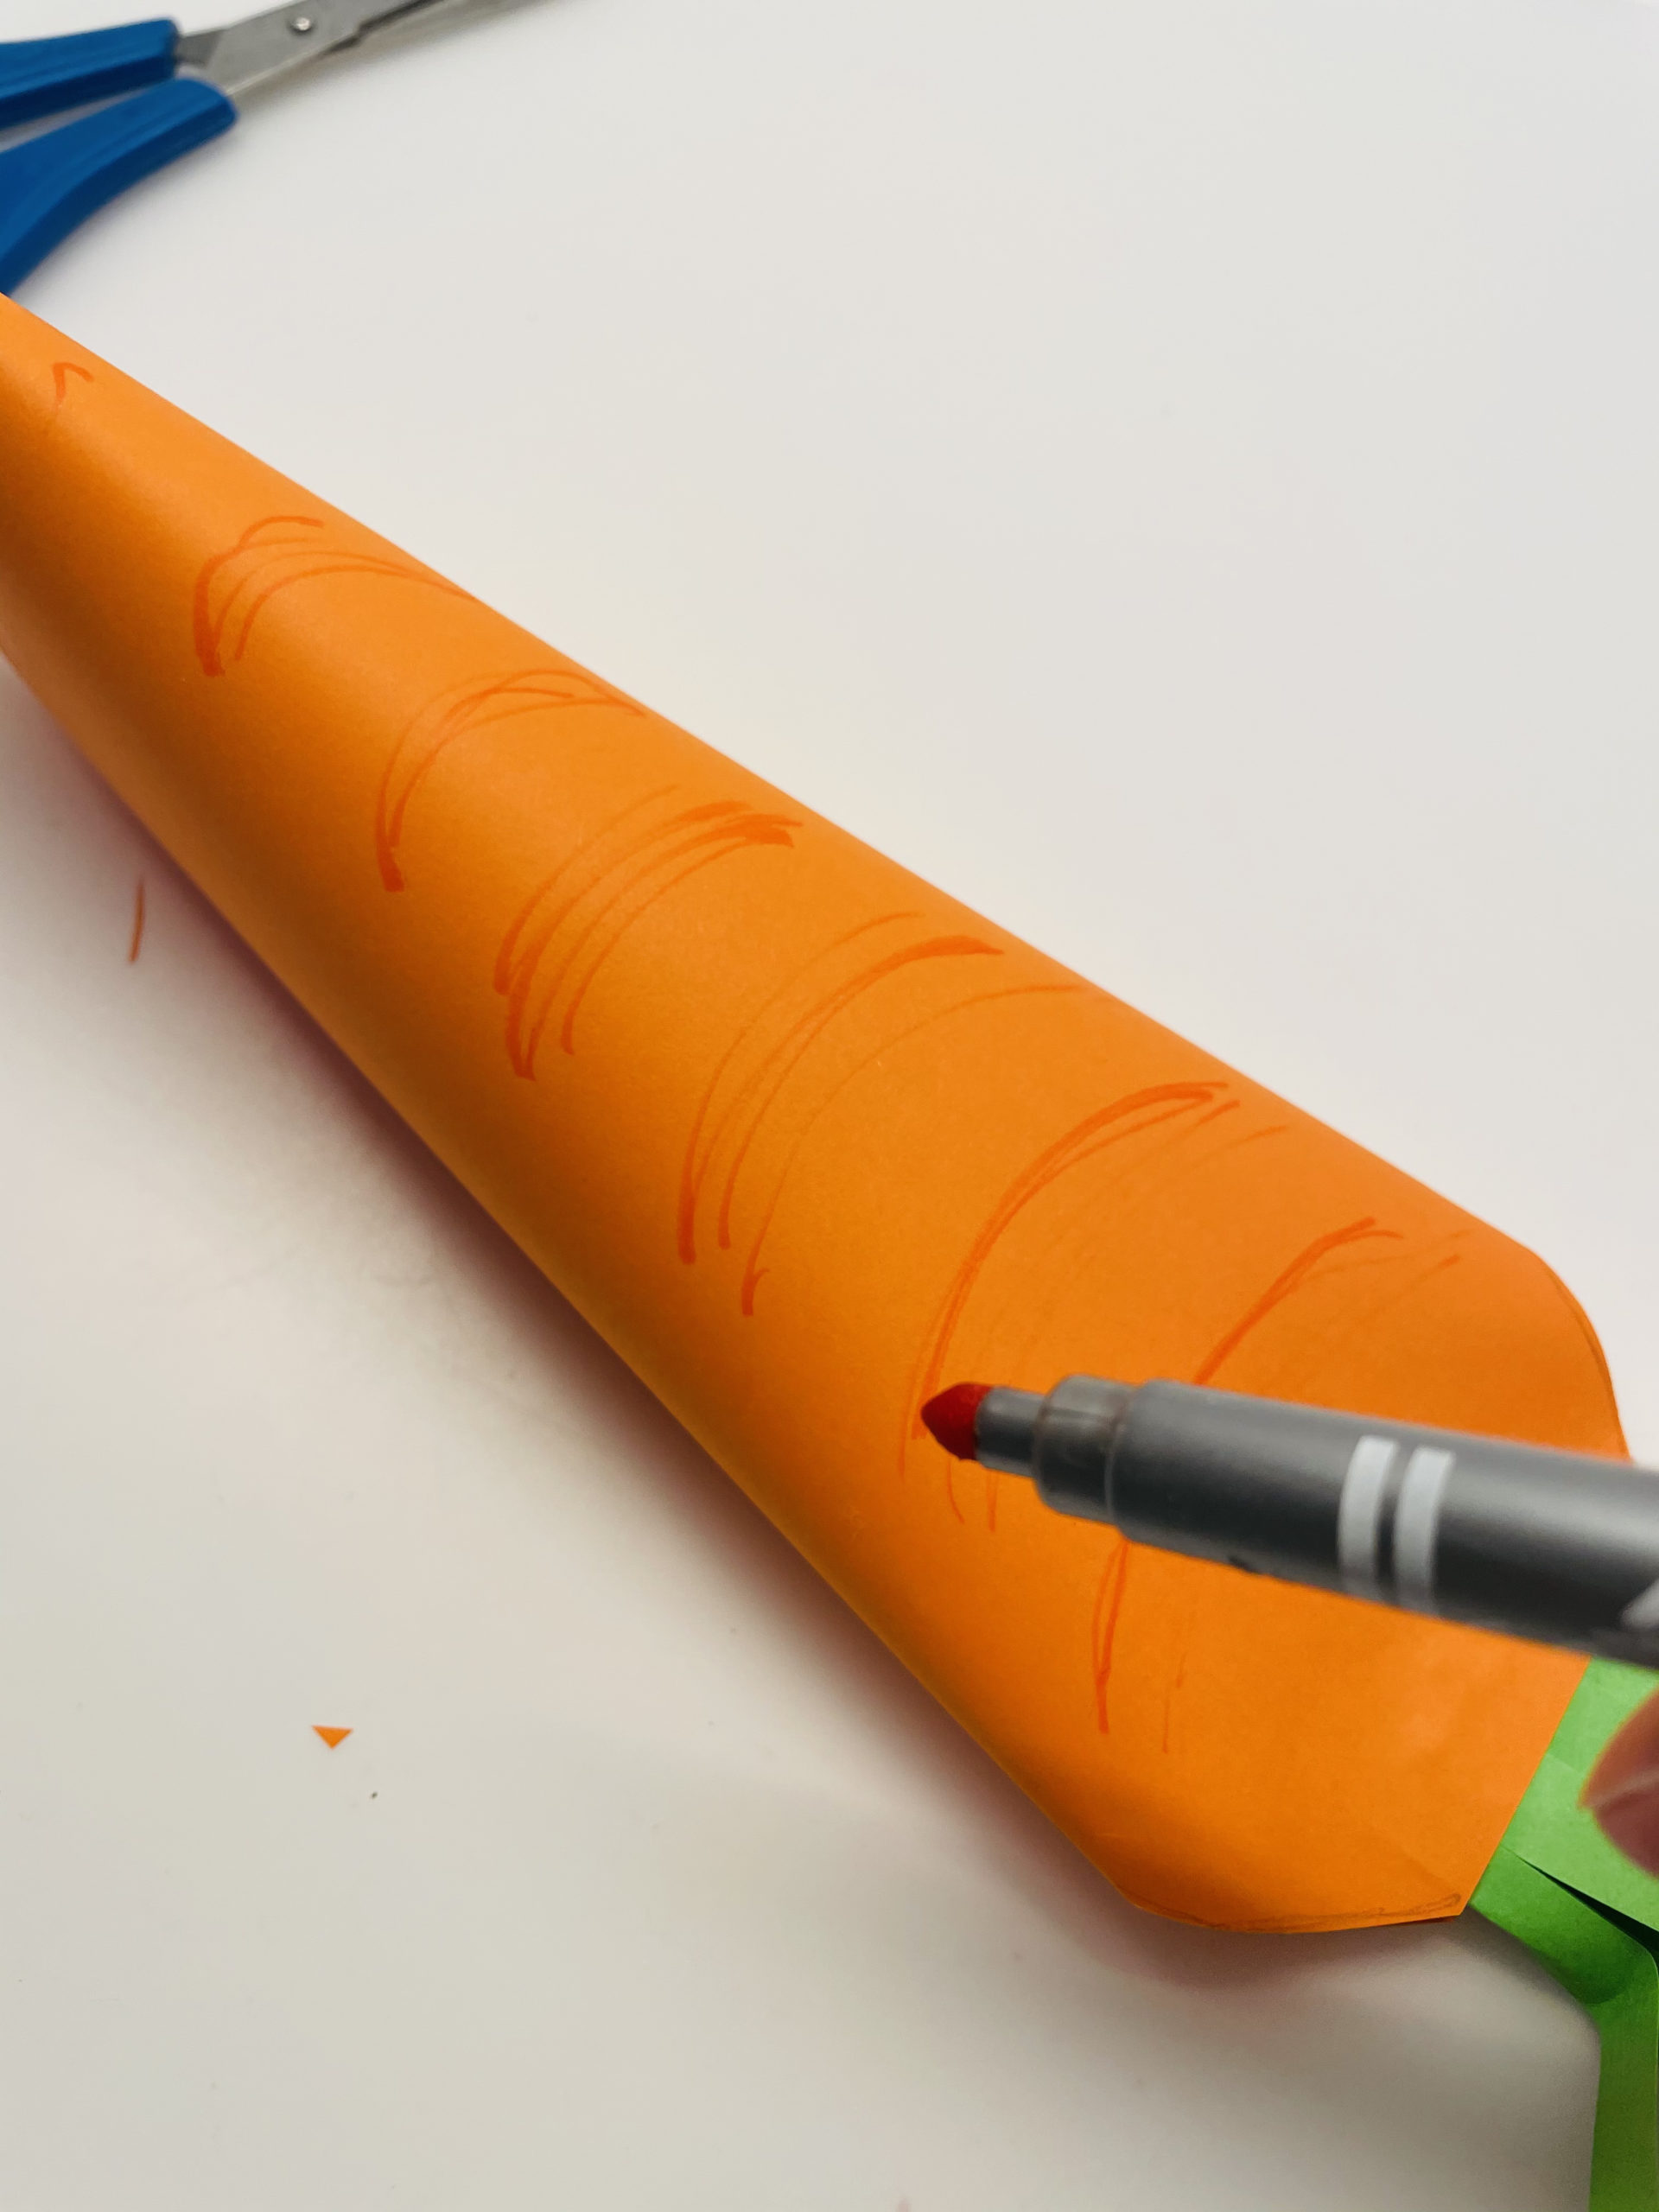 Bild zum Schritt 21 für die Kinder-Beschäftigung: 'Bemalt nun die Karotte mit einem orangen Stift, so wirkt...'